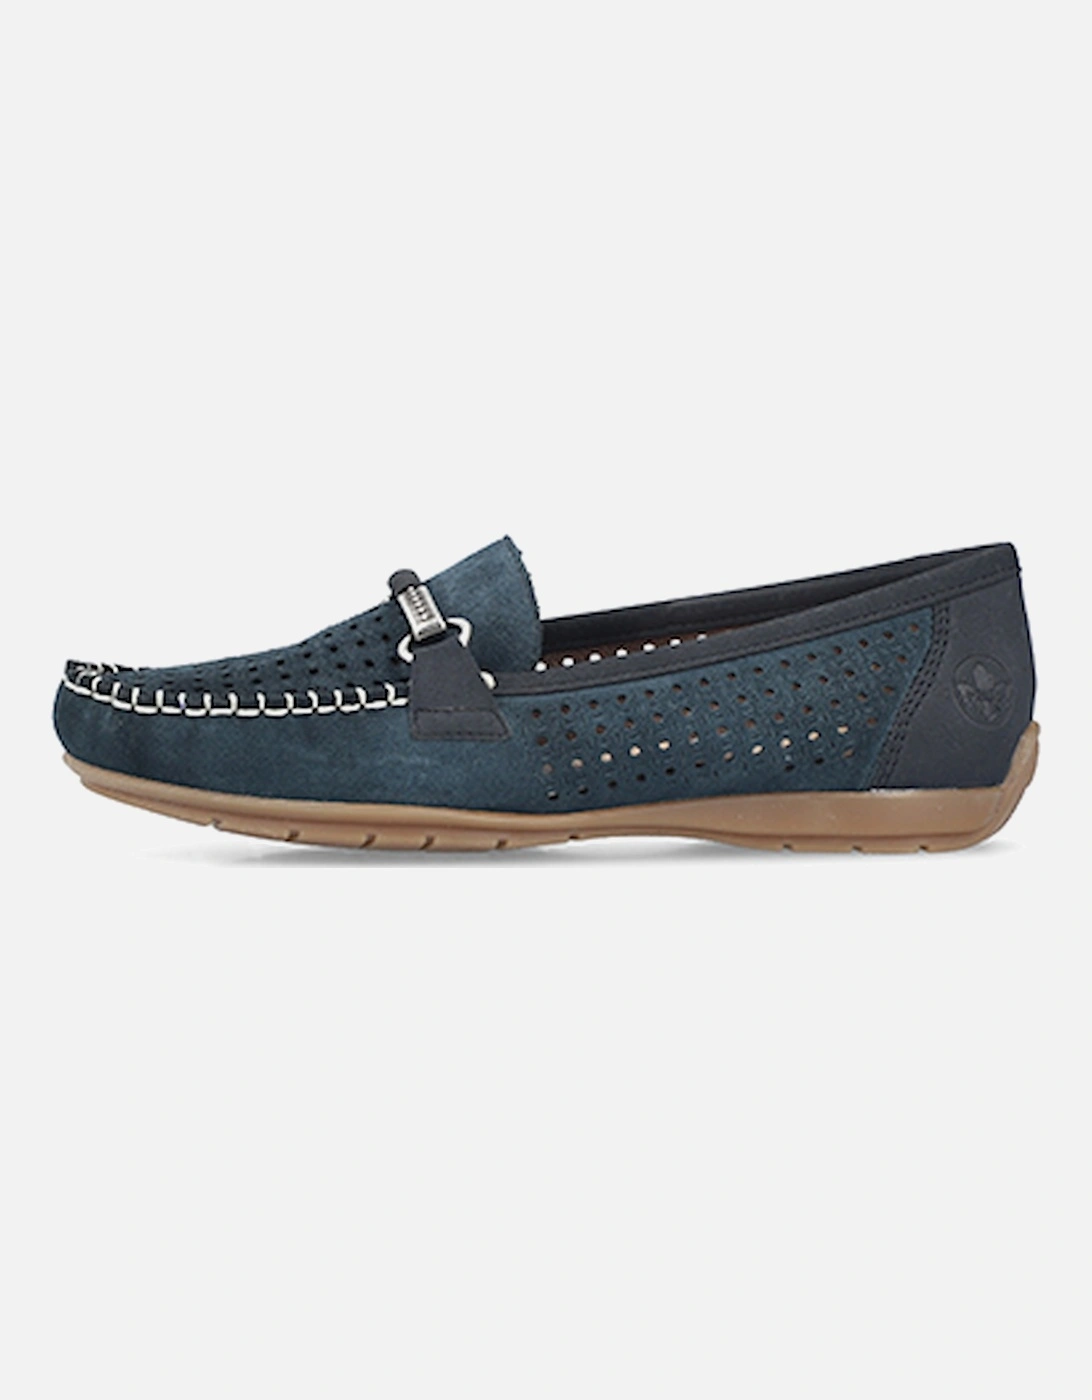 40253-14 Women's Shoe Blue